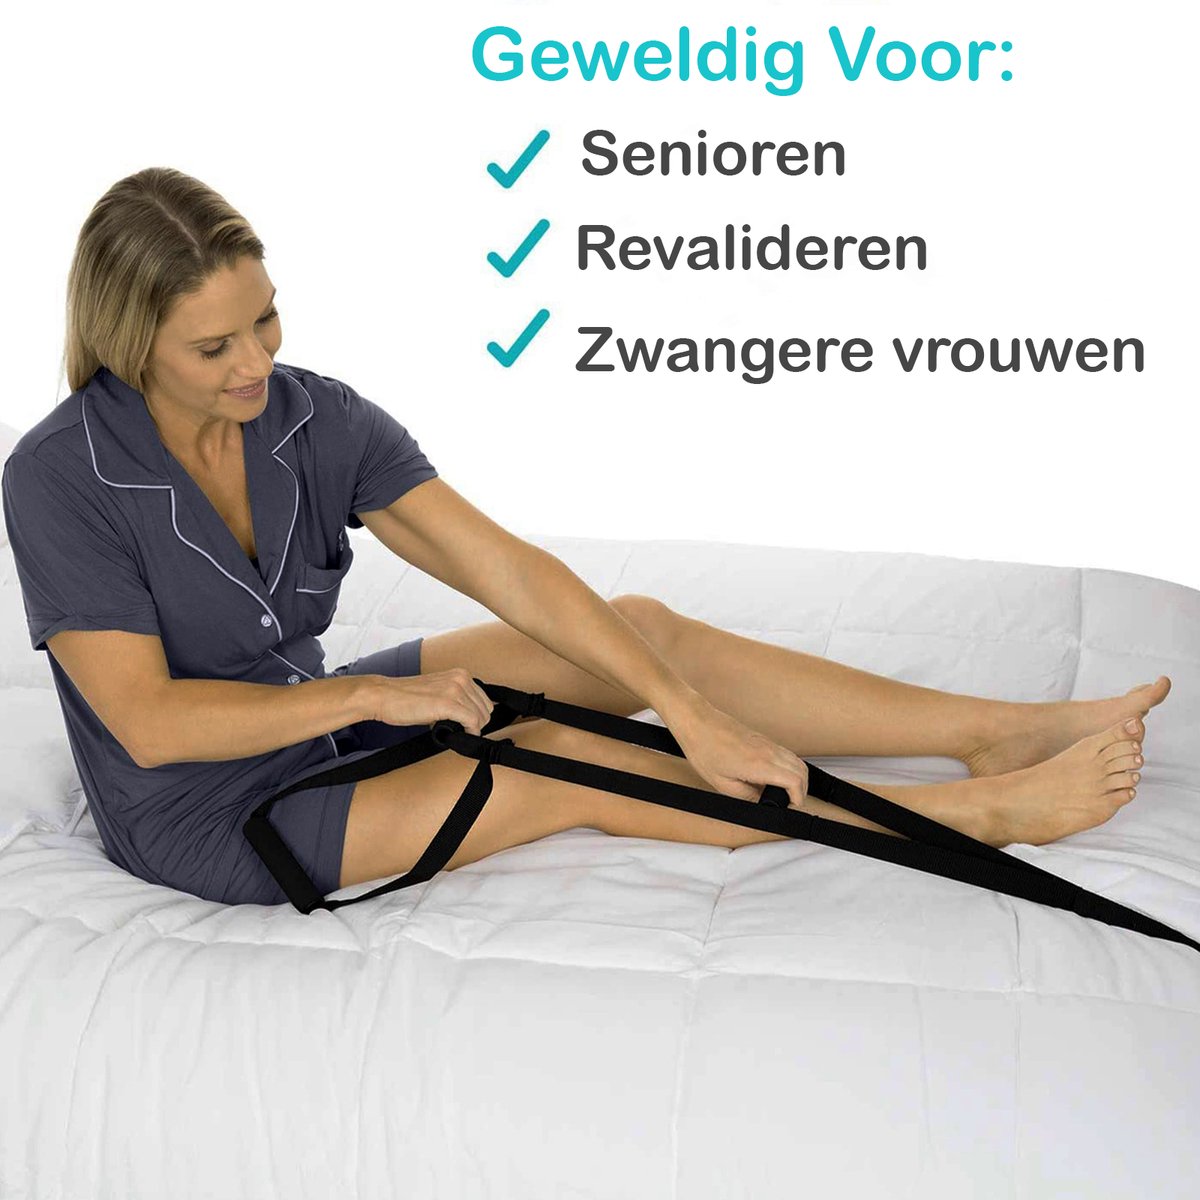 Bedtouwladder - Stevige - duurzaam - opstaan zonder vreemde hulp - ideaal bij beperkte mobiliteit - ergonomisch - touwladder - bedladder - antislip - - Ondersteunt u bij het opstaan - Sta- en zithulp - hulpmiddel rechtop zitten bed